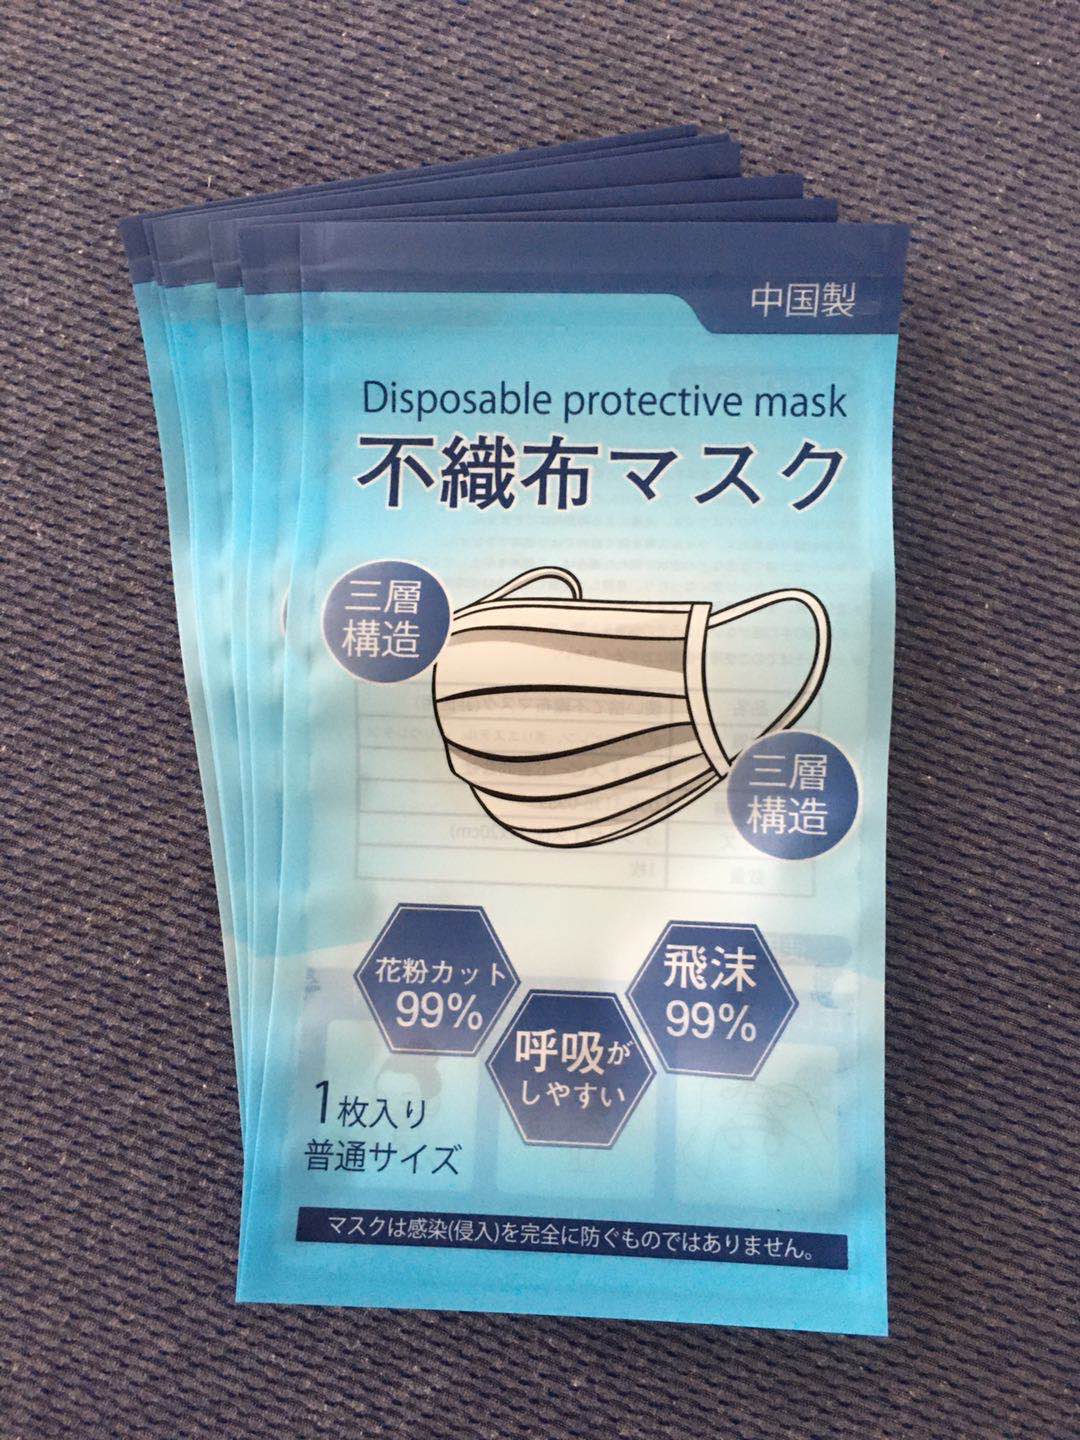 厂家定制日文版口罩包装袋子